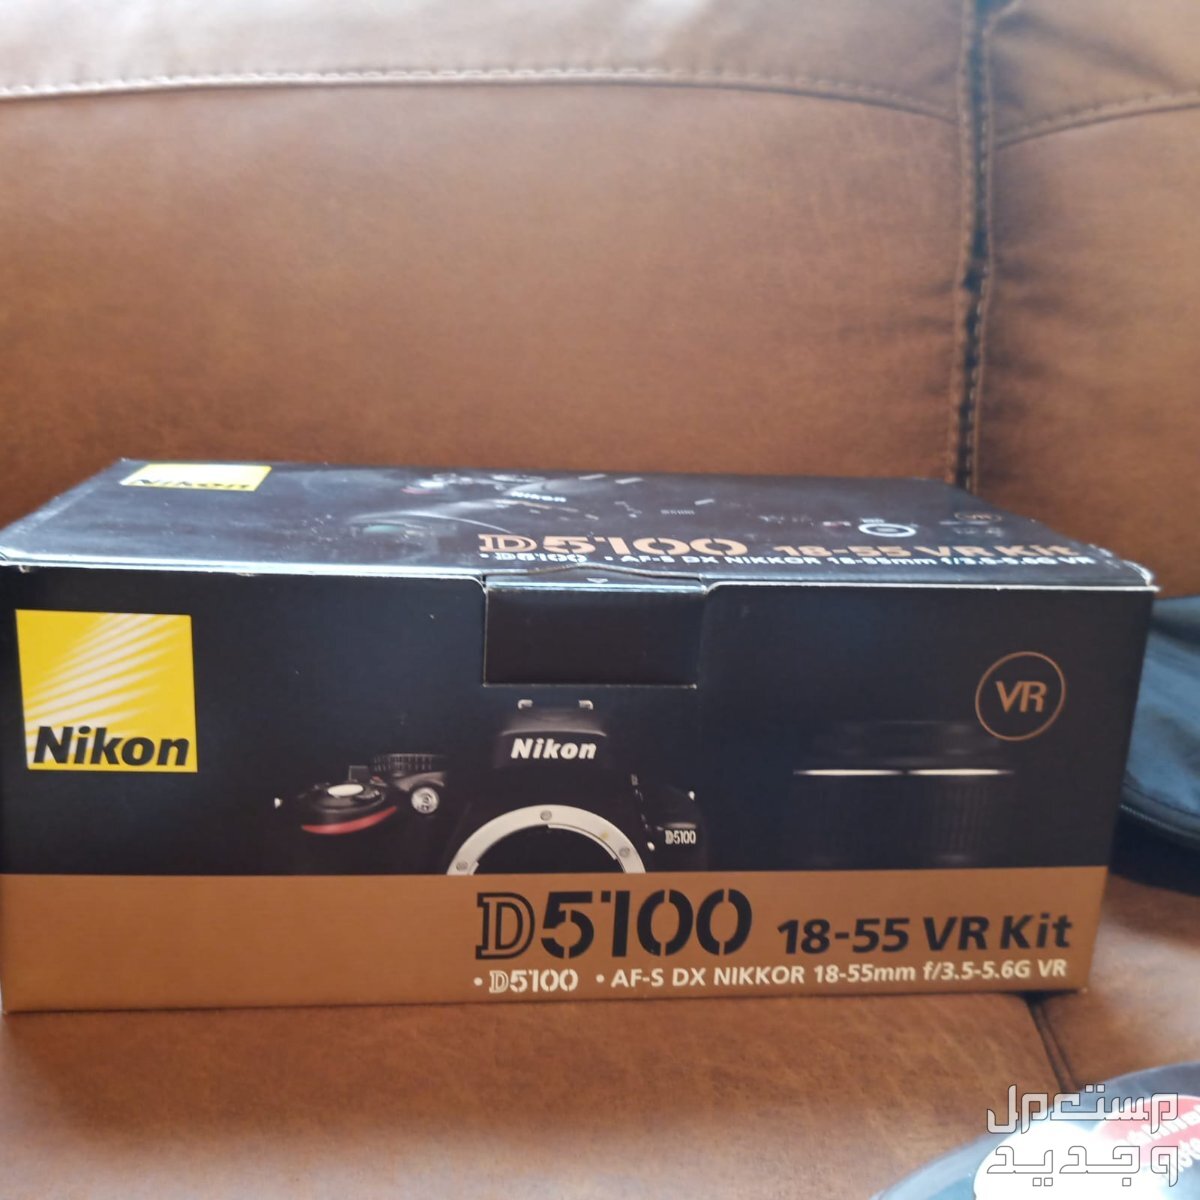 كاميرا نيكون D5100 في المدينة المنورة بسعر 2500 ريال سعودي